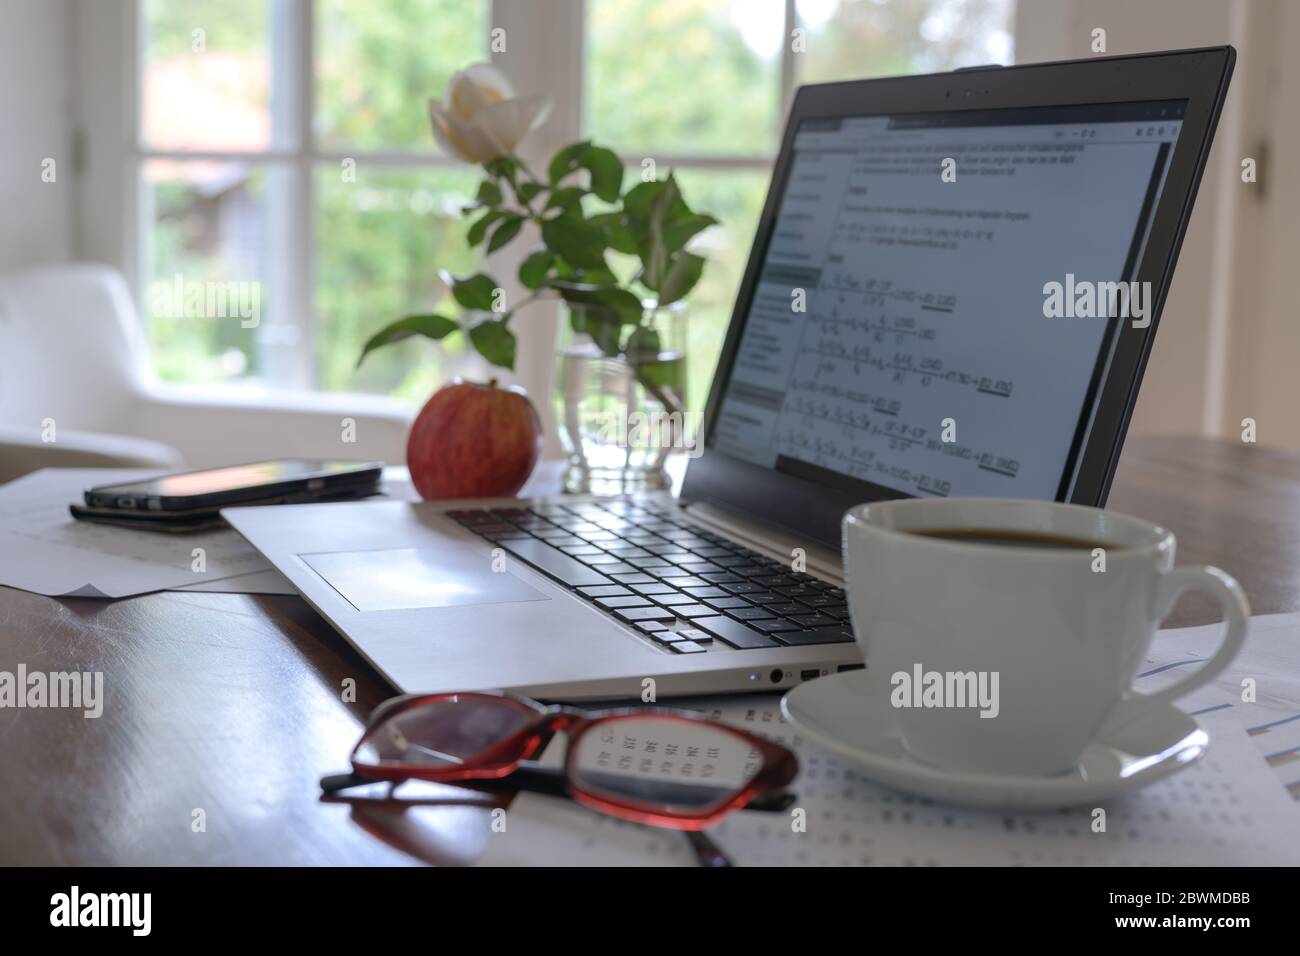 ordenador portátil con fórmulas matemáticas en la pantalla, taza de café, vasos y una manzana fresca en el escritorio de un estudiante, programador o un pequeño busi independiente Foto de stock